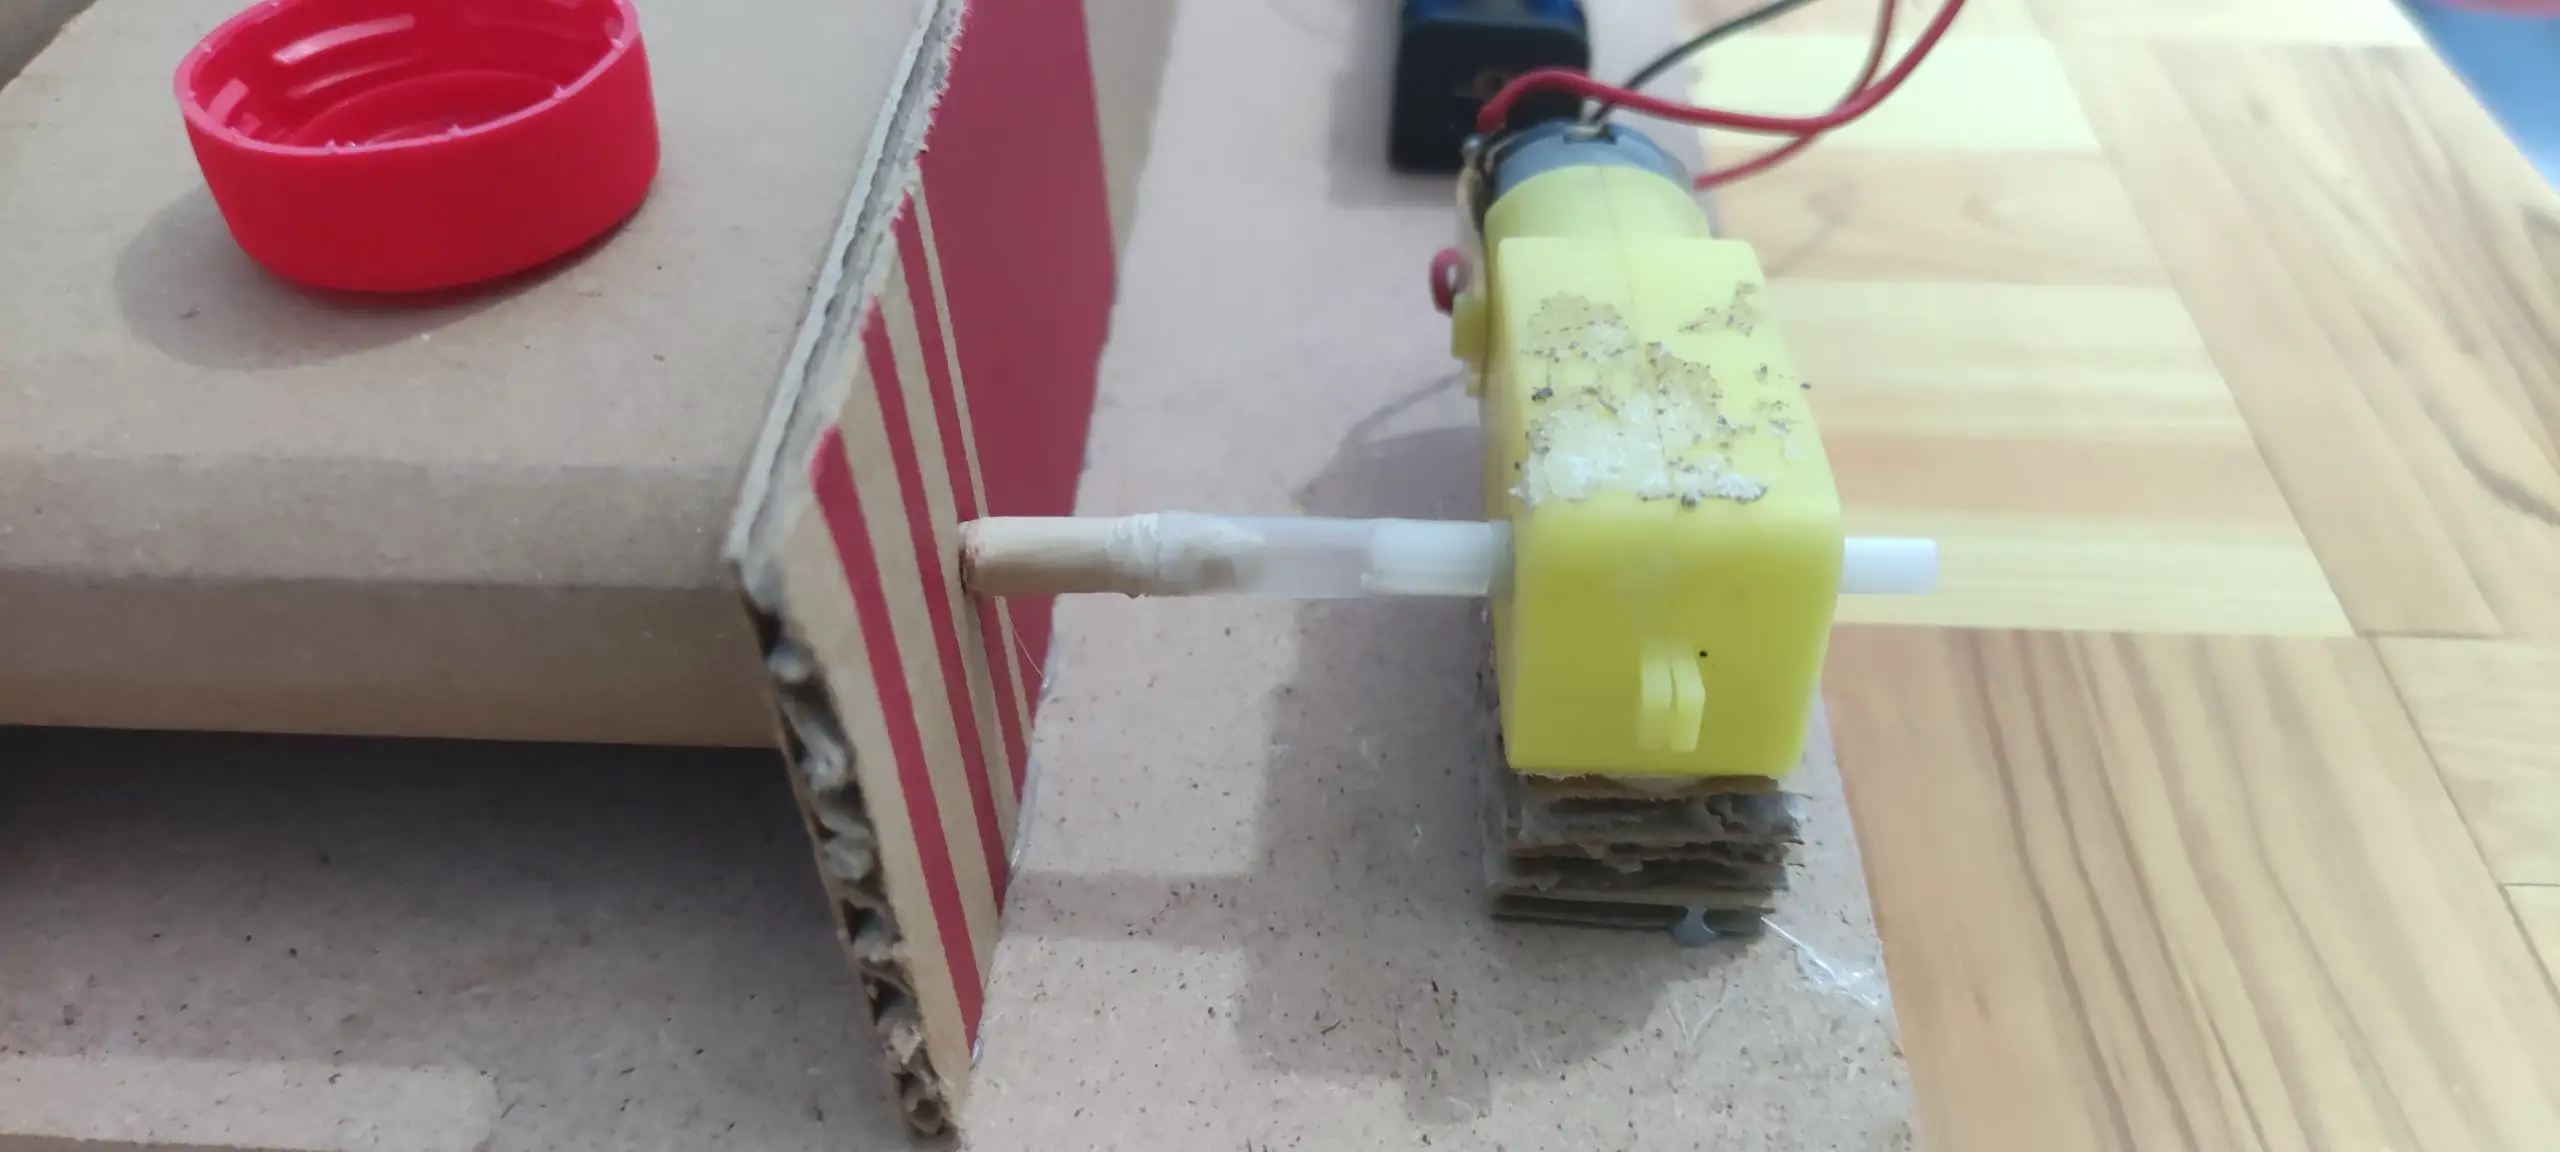 DIY Cardboard Conveyor - Motor Alignment